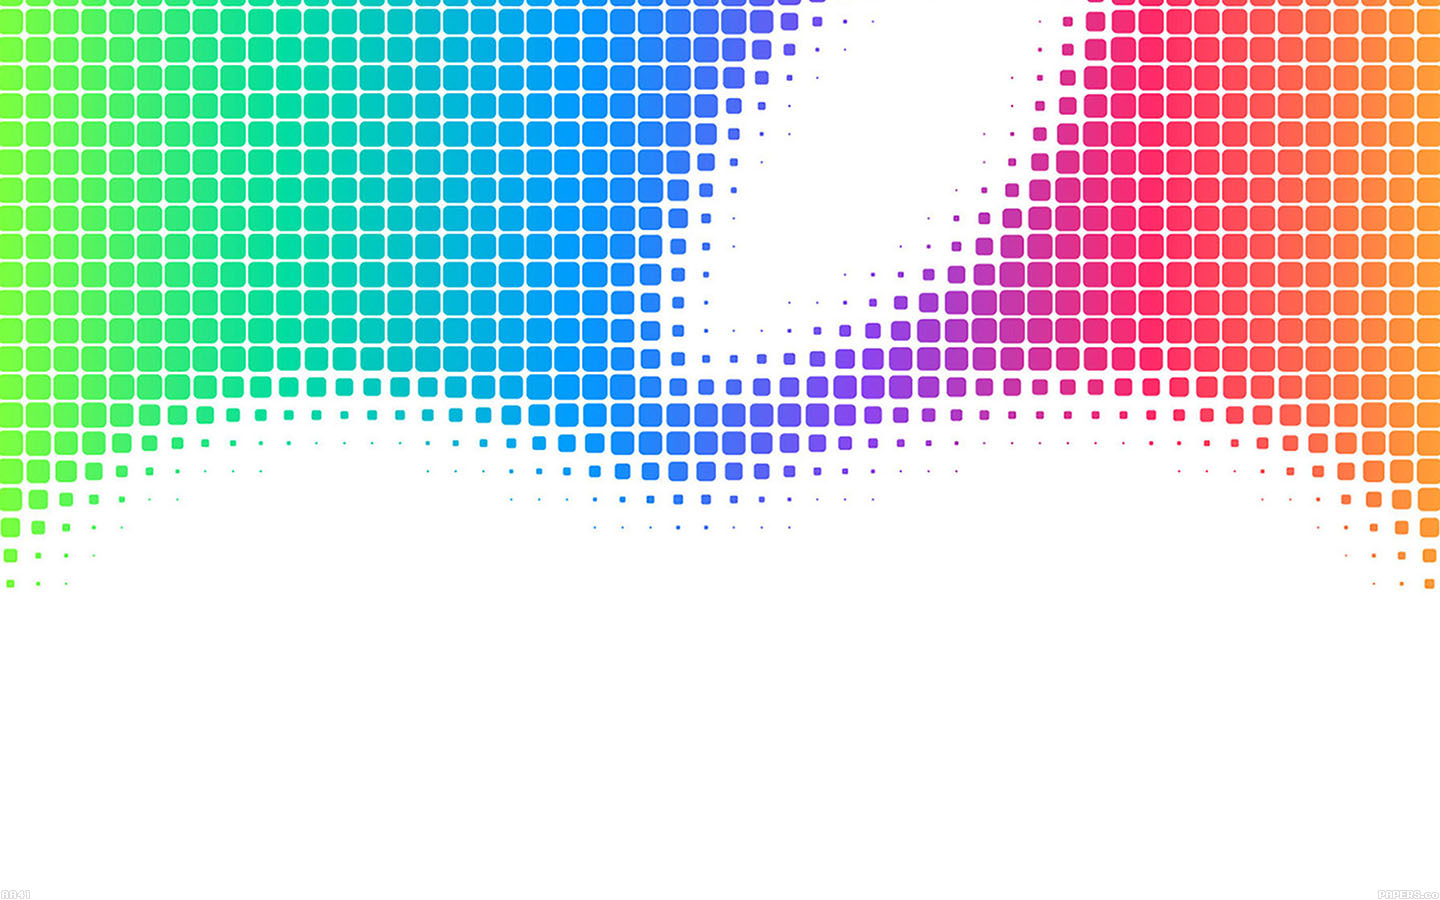 apple macbook air desktop backgrounds - Wallpapers